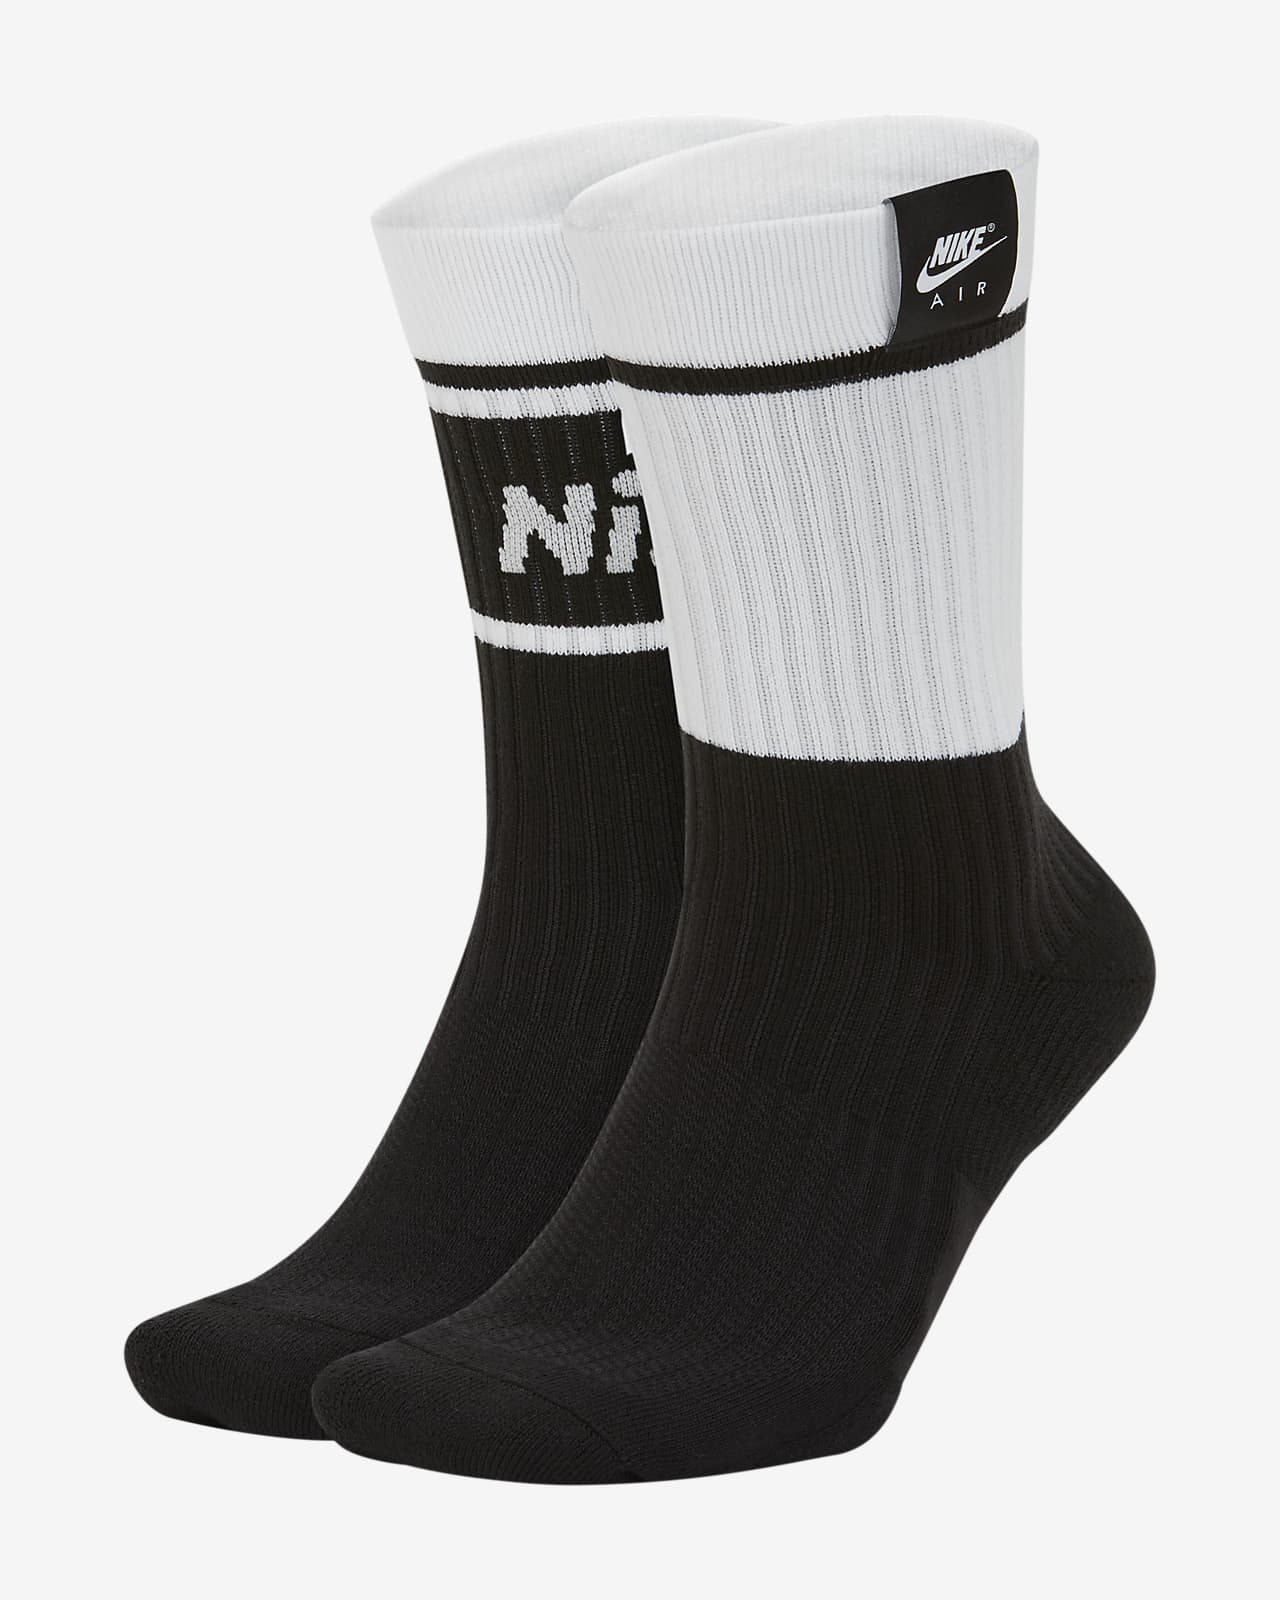 nike air socks